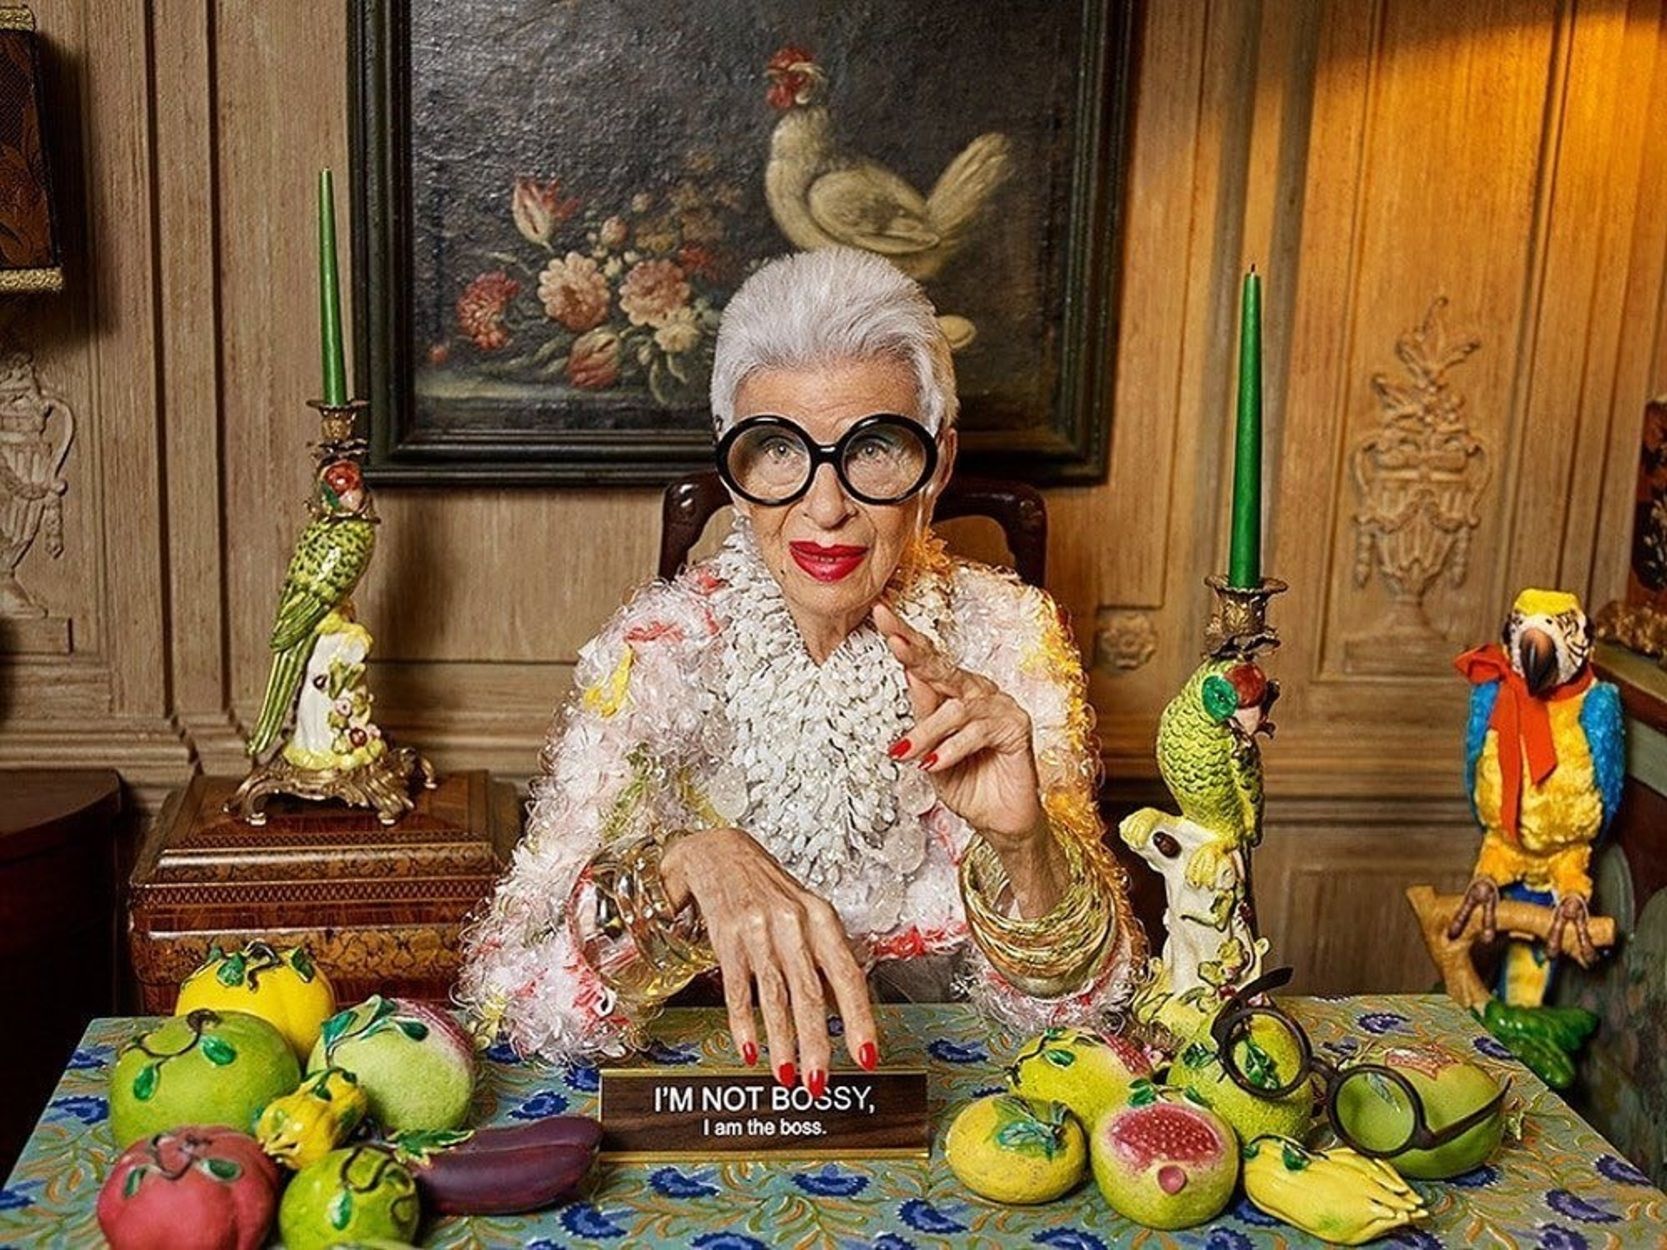 Muere Iris Apfel, gran icono de la moda que desafió al edadismo, a los 102 años